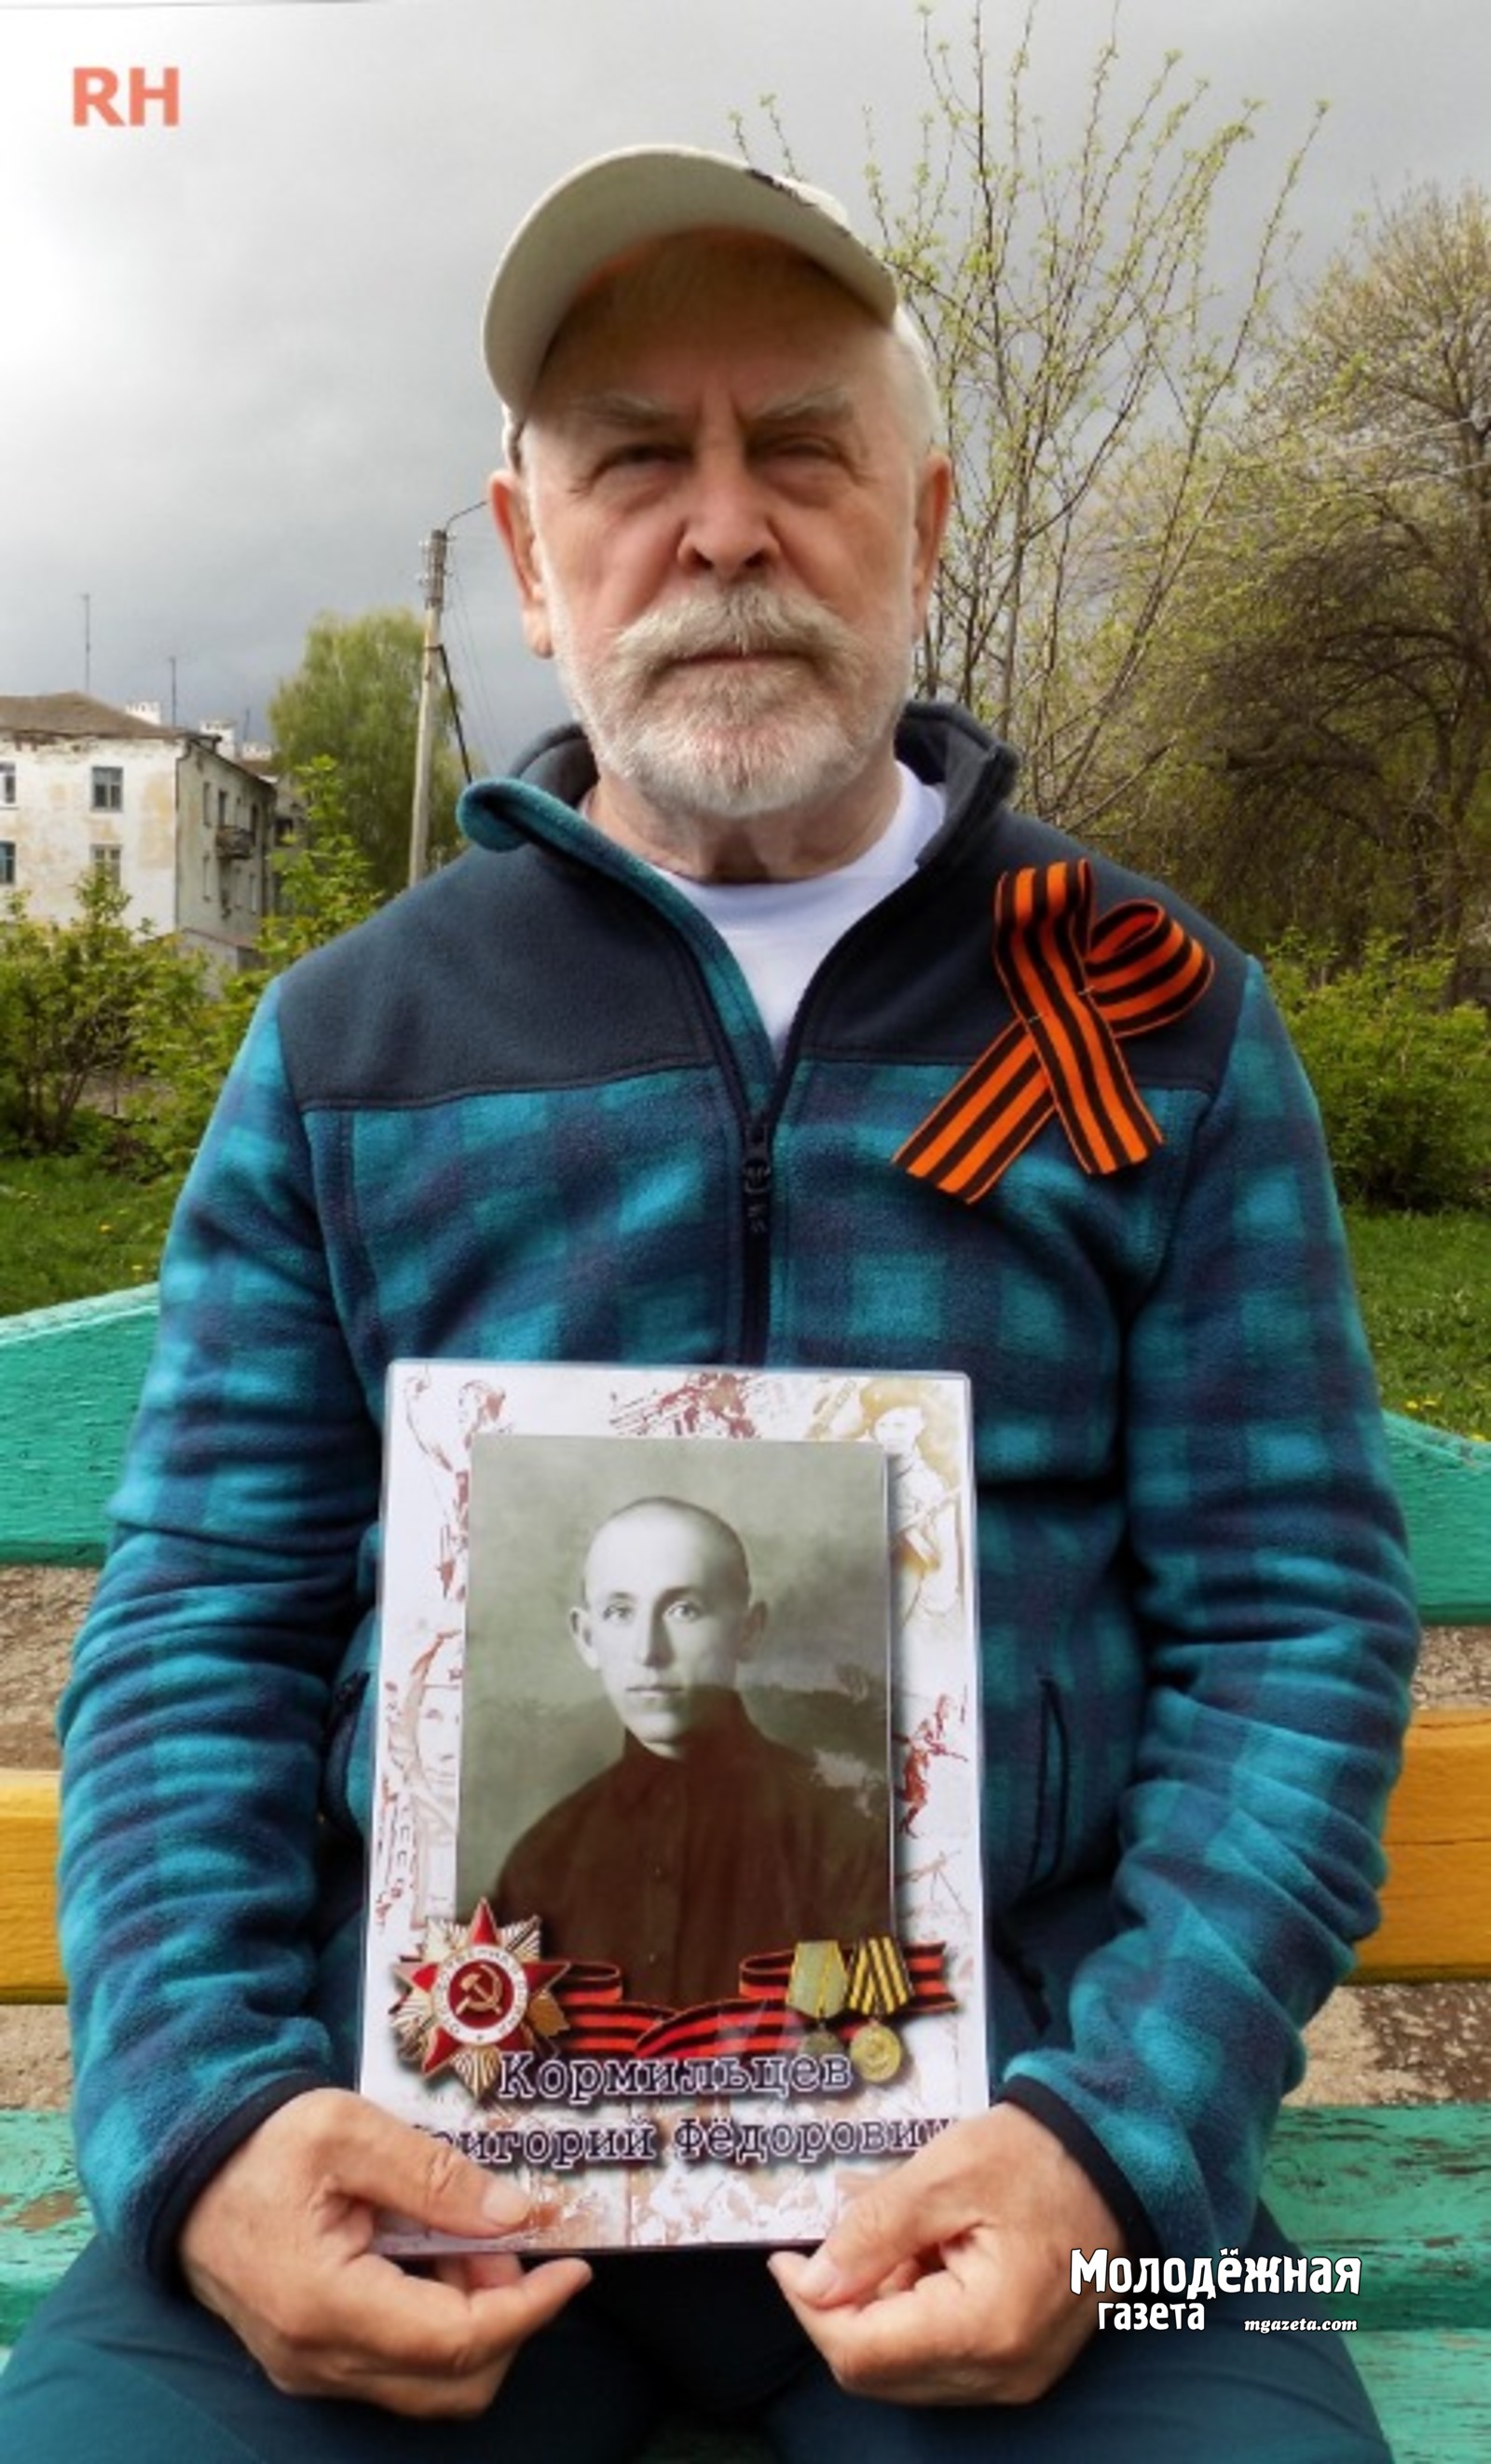 Юрий Кормильцев с портретом отца Григория Федоровича Кормильцева.